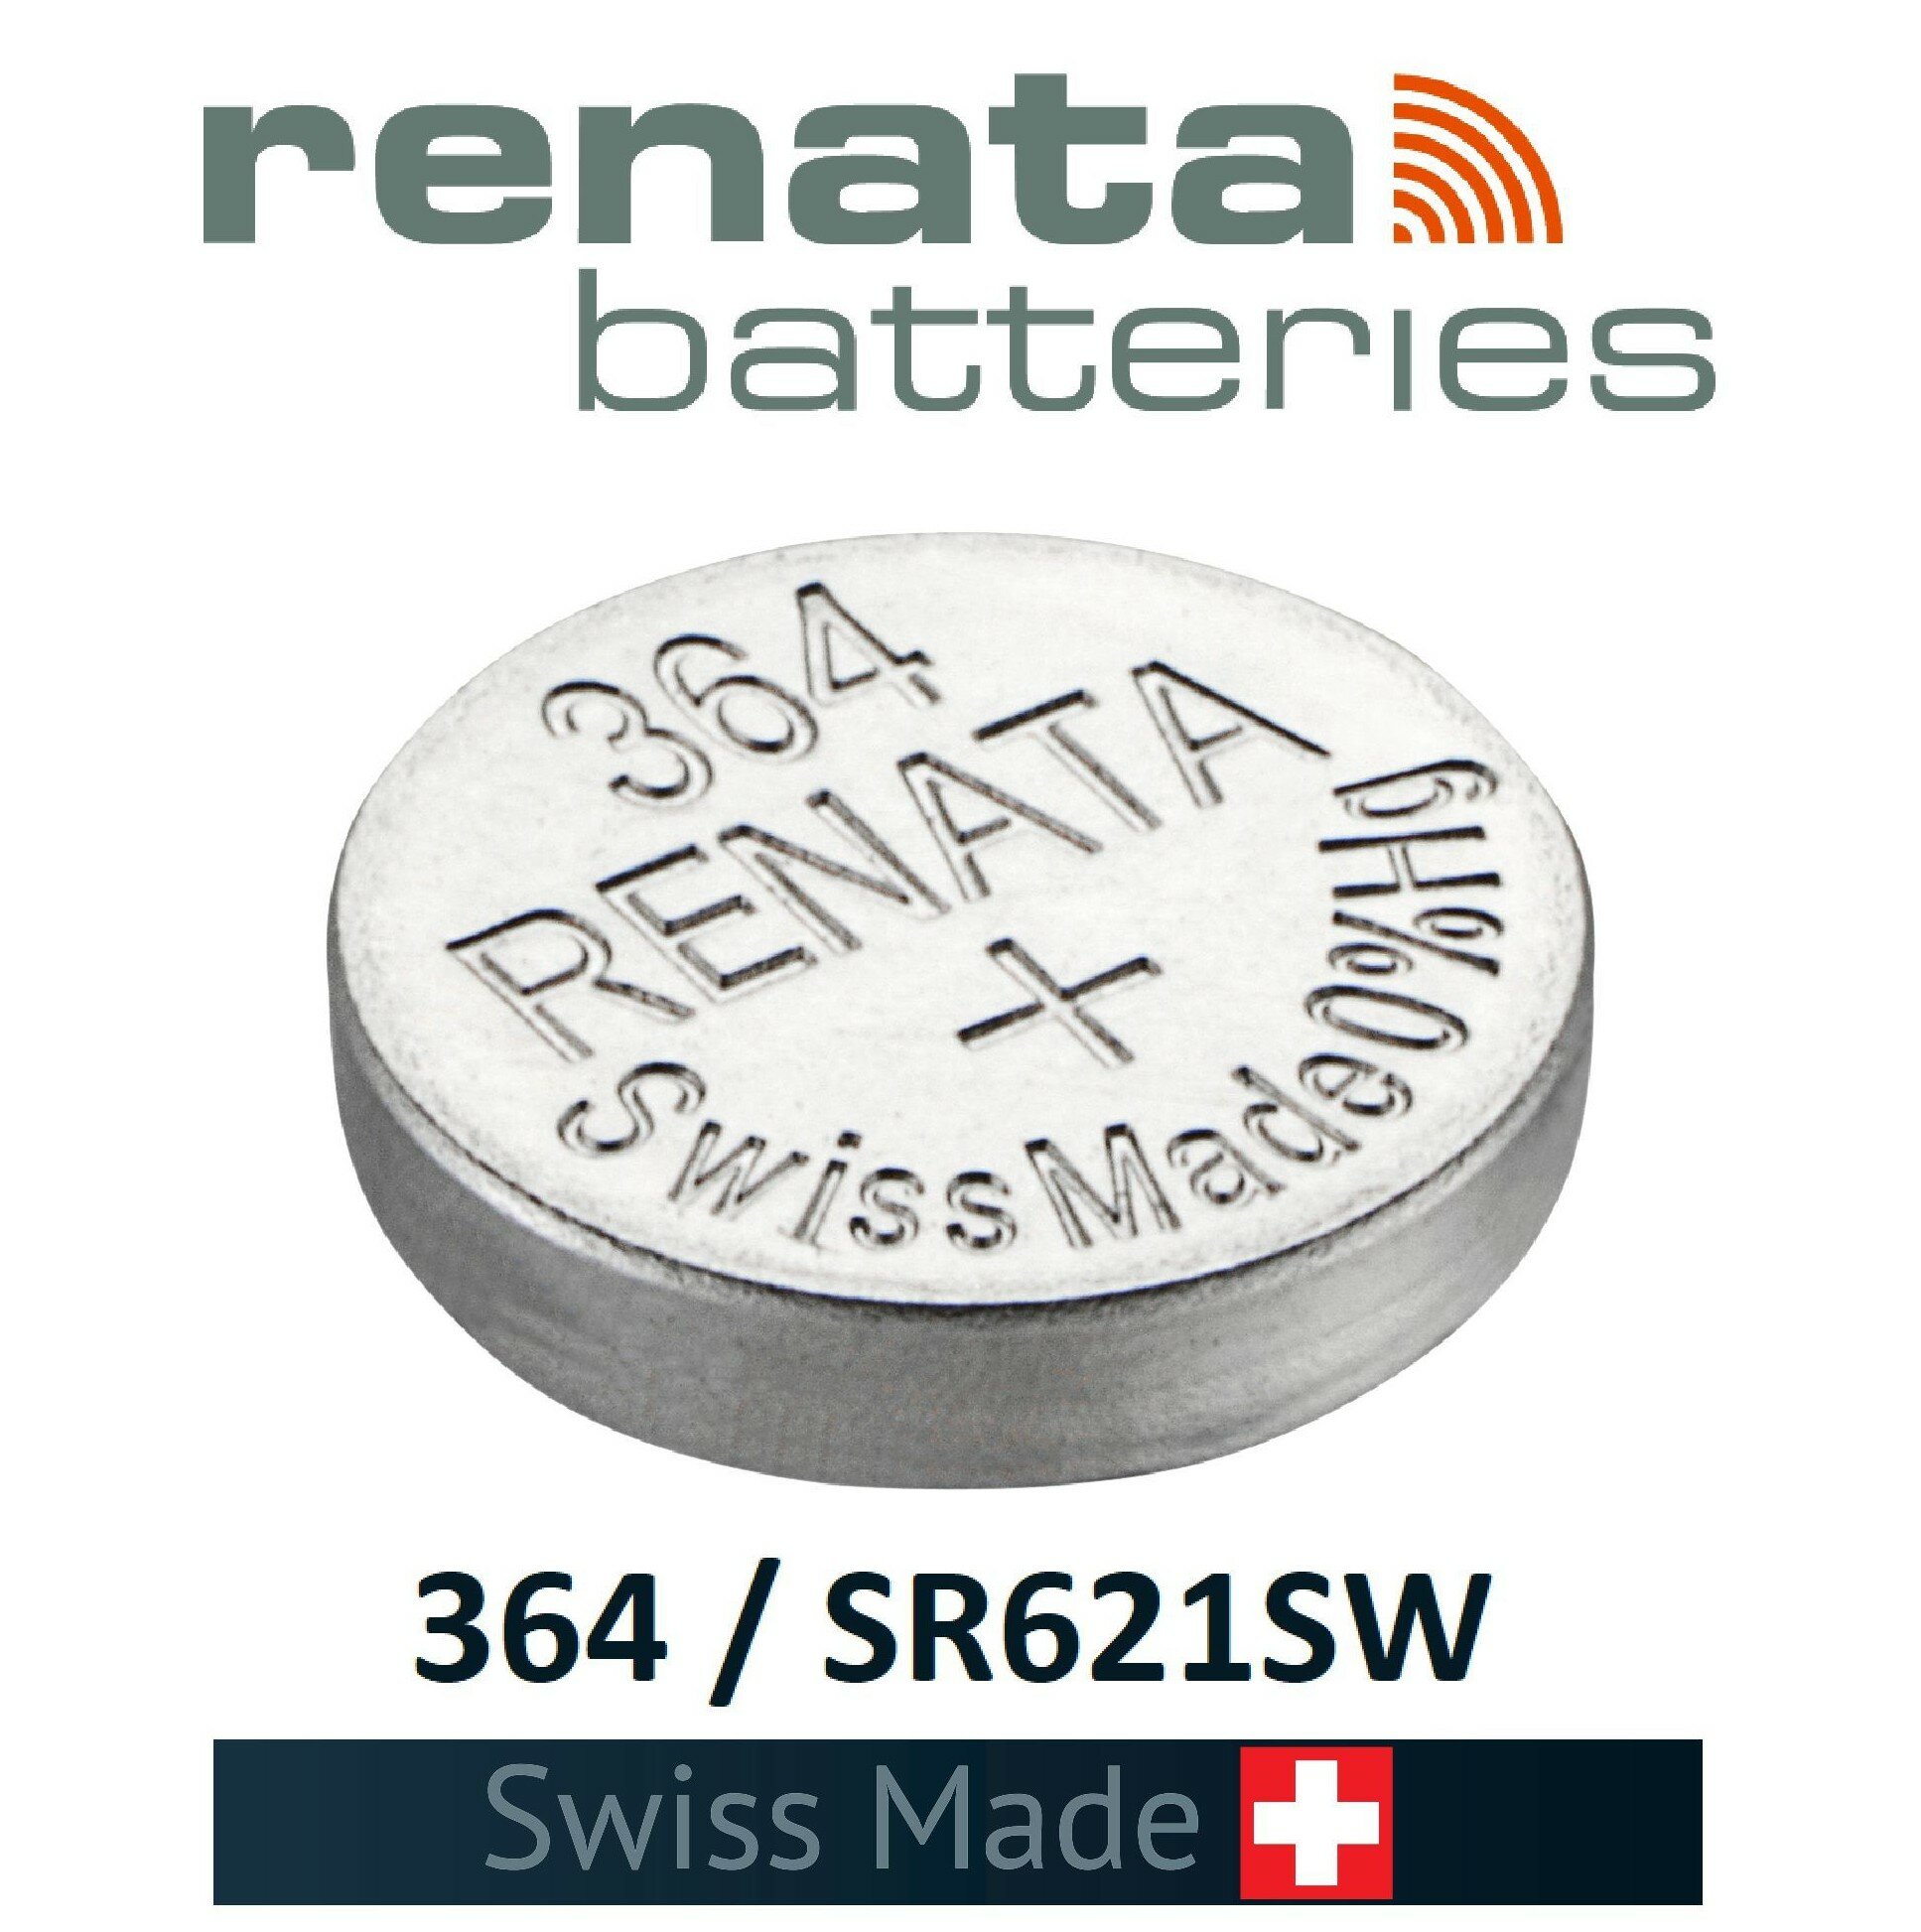 Батарейка Renata SR621SW